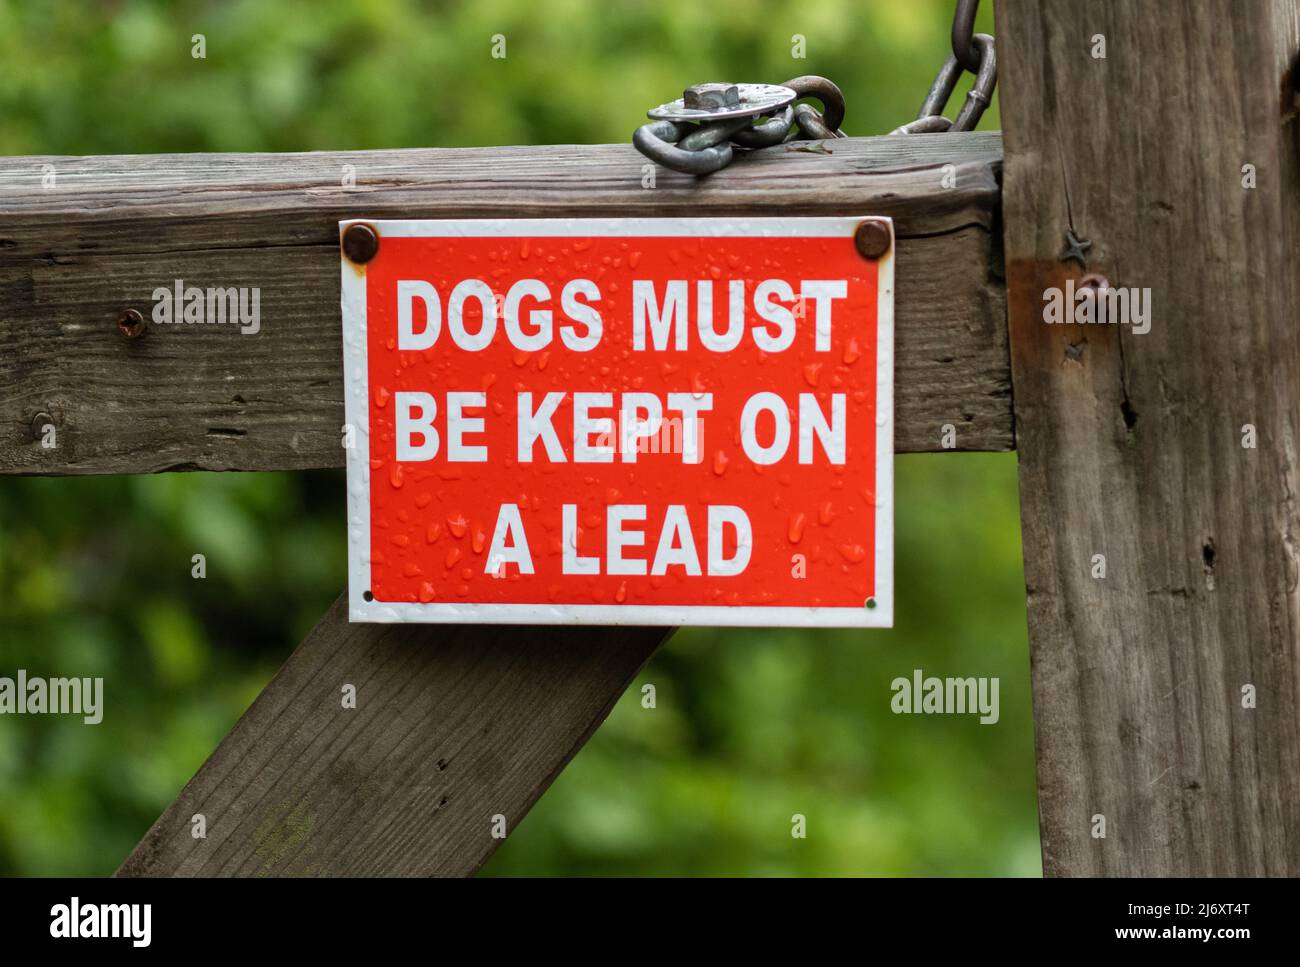 Rot-weißes Schild am Gate, das besagt, dass Hunde an der Leine geführt werden müssen. Stockfoto